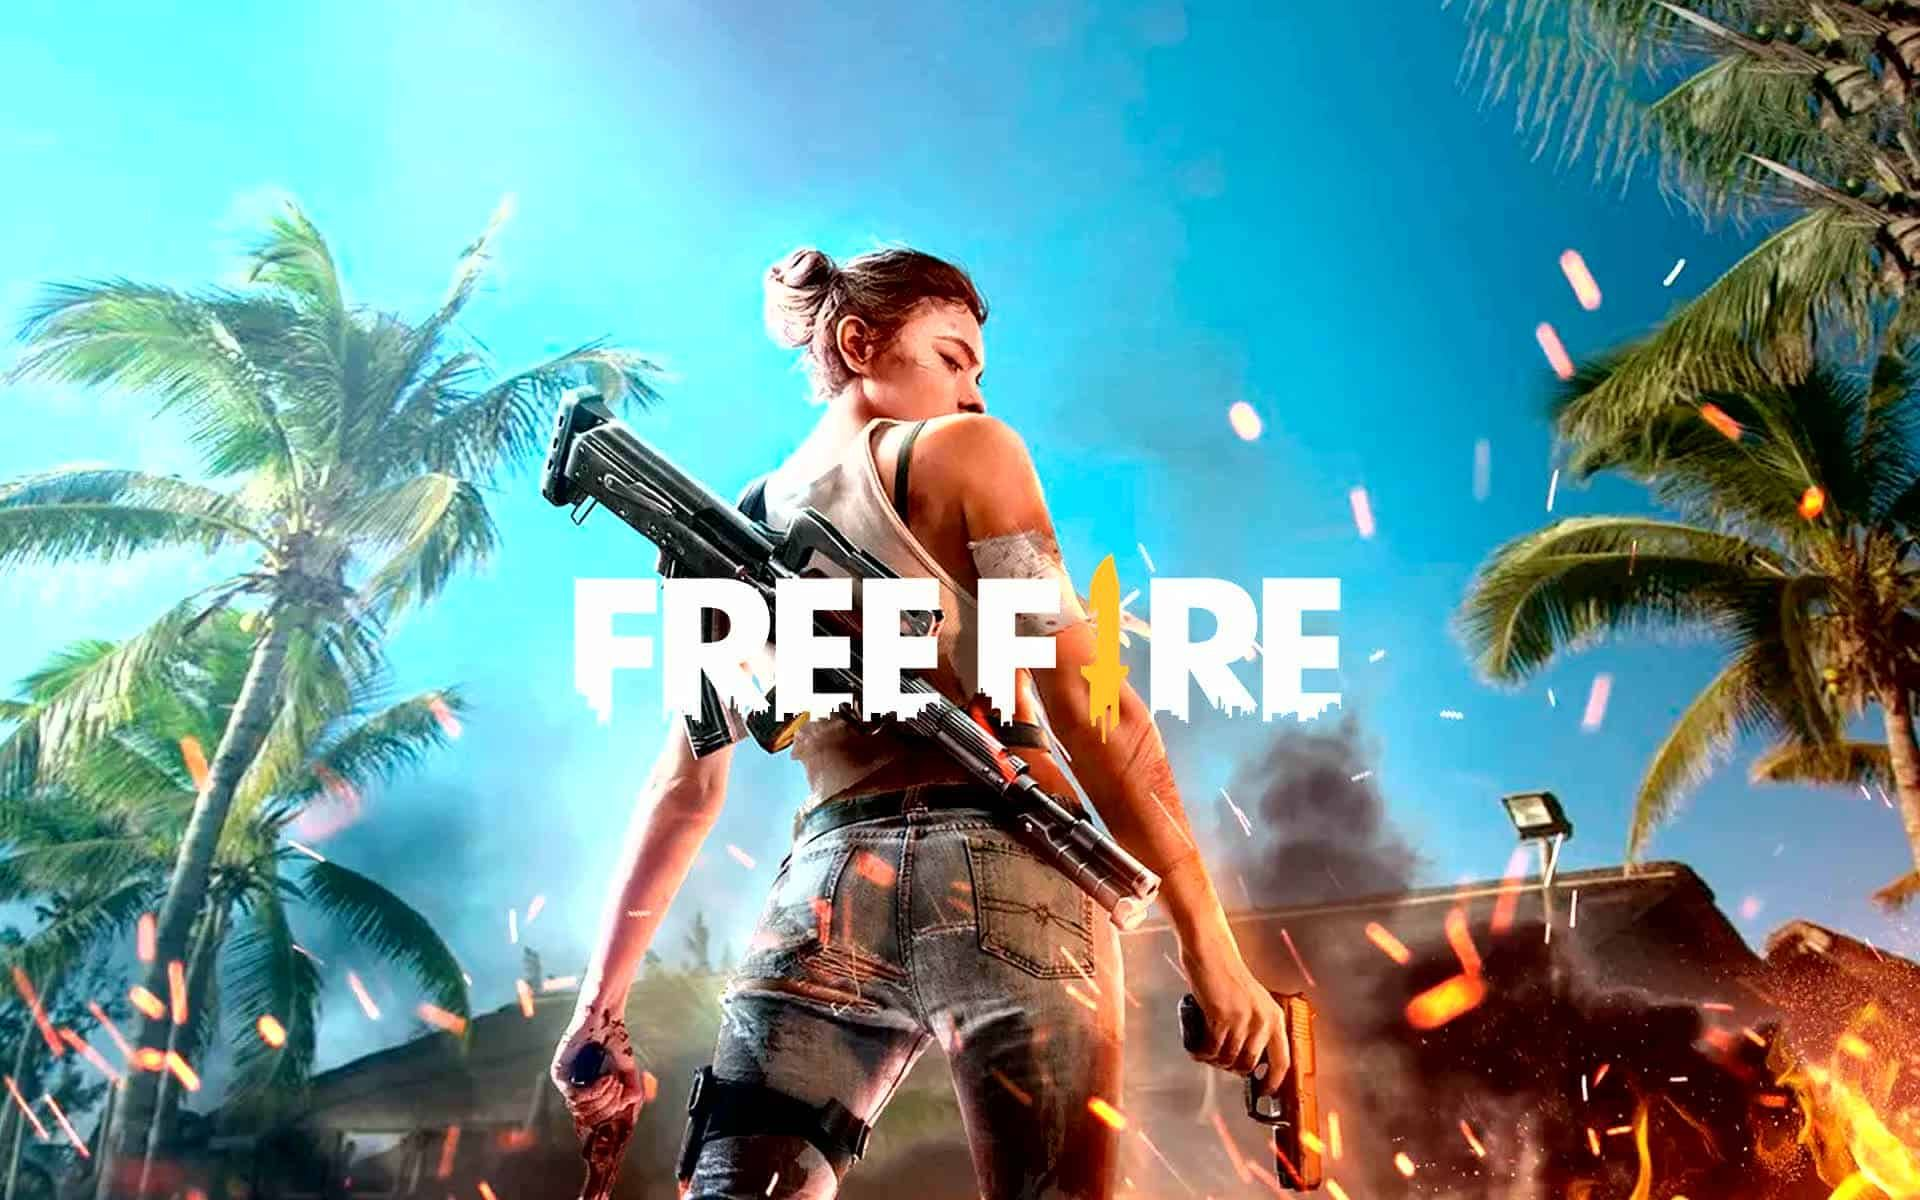 Free Fire VS Free Fire MAX - Full Comparison